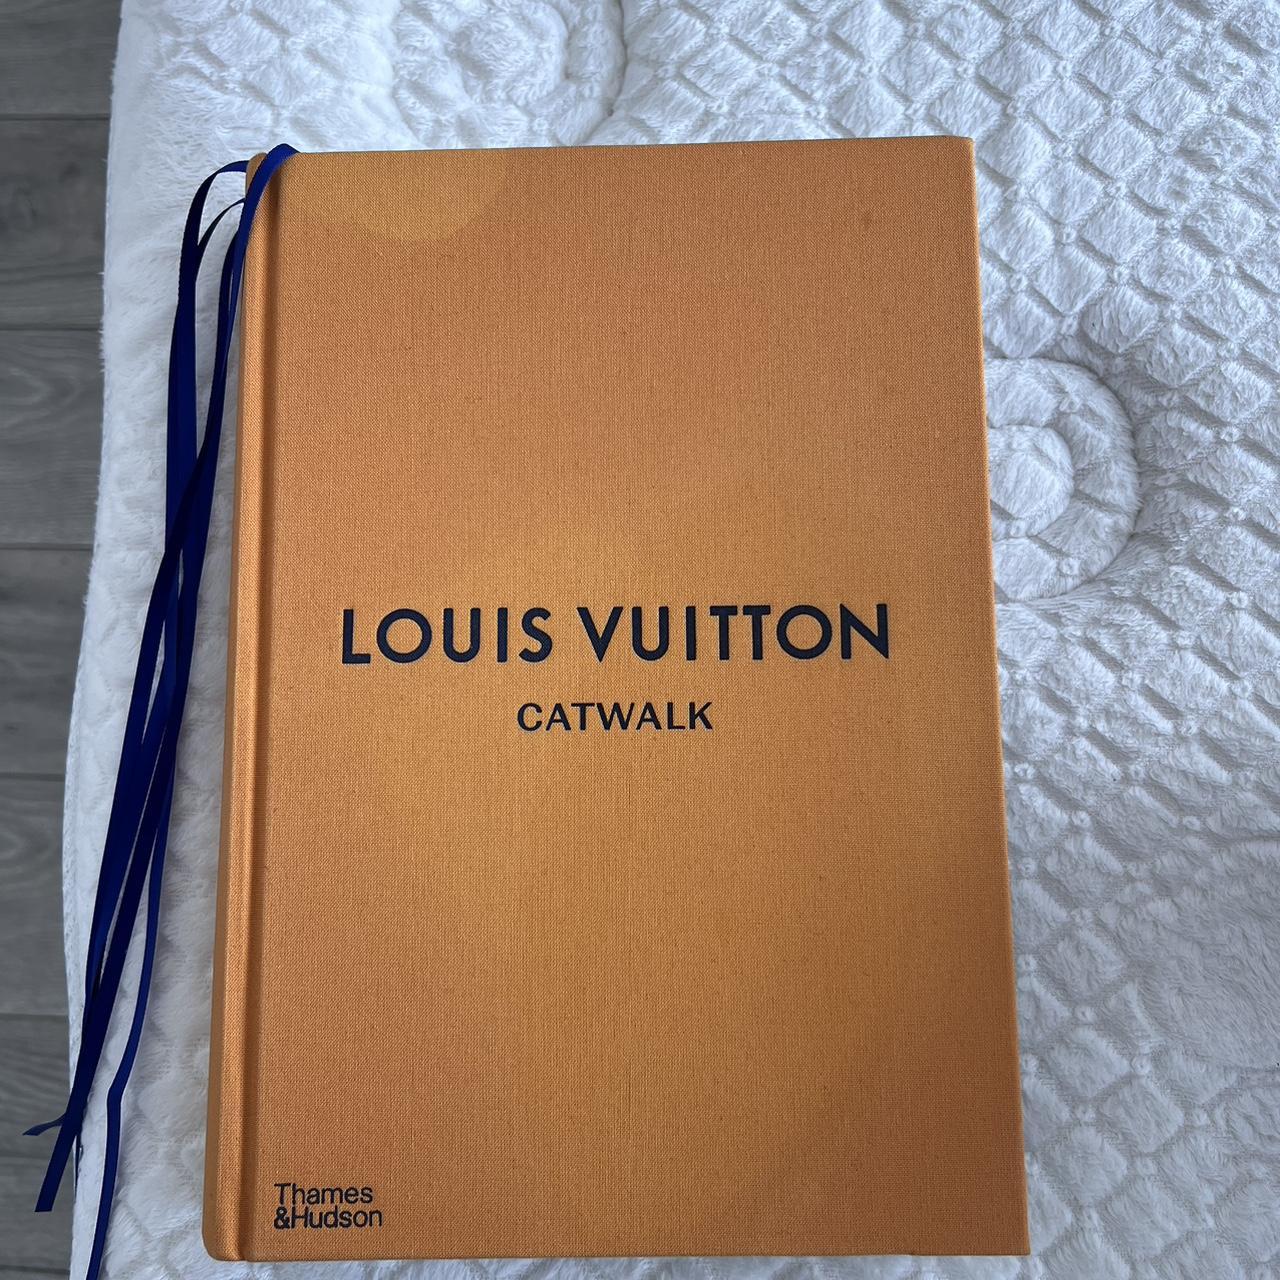 PRICE DROP! Authentic Louis Vuitton Suhali Le - Depop